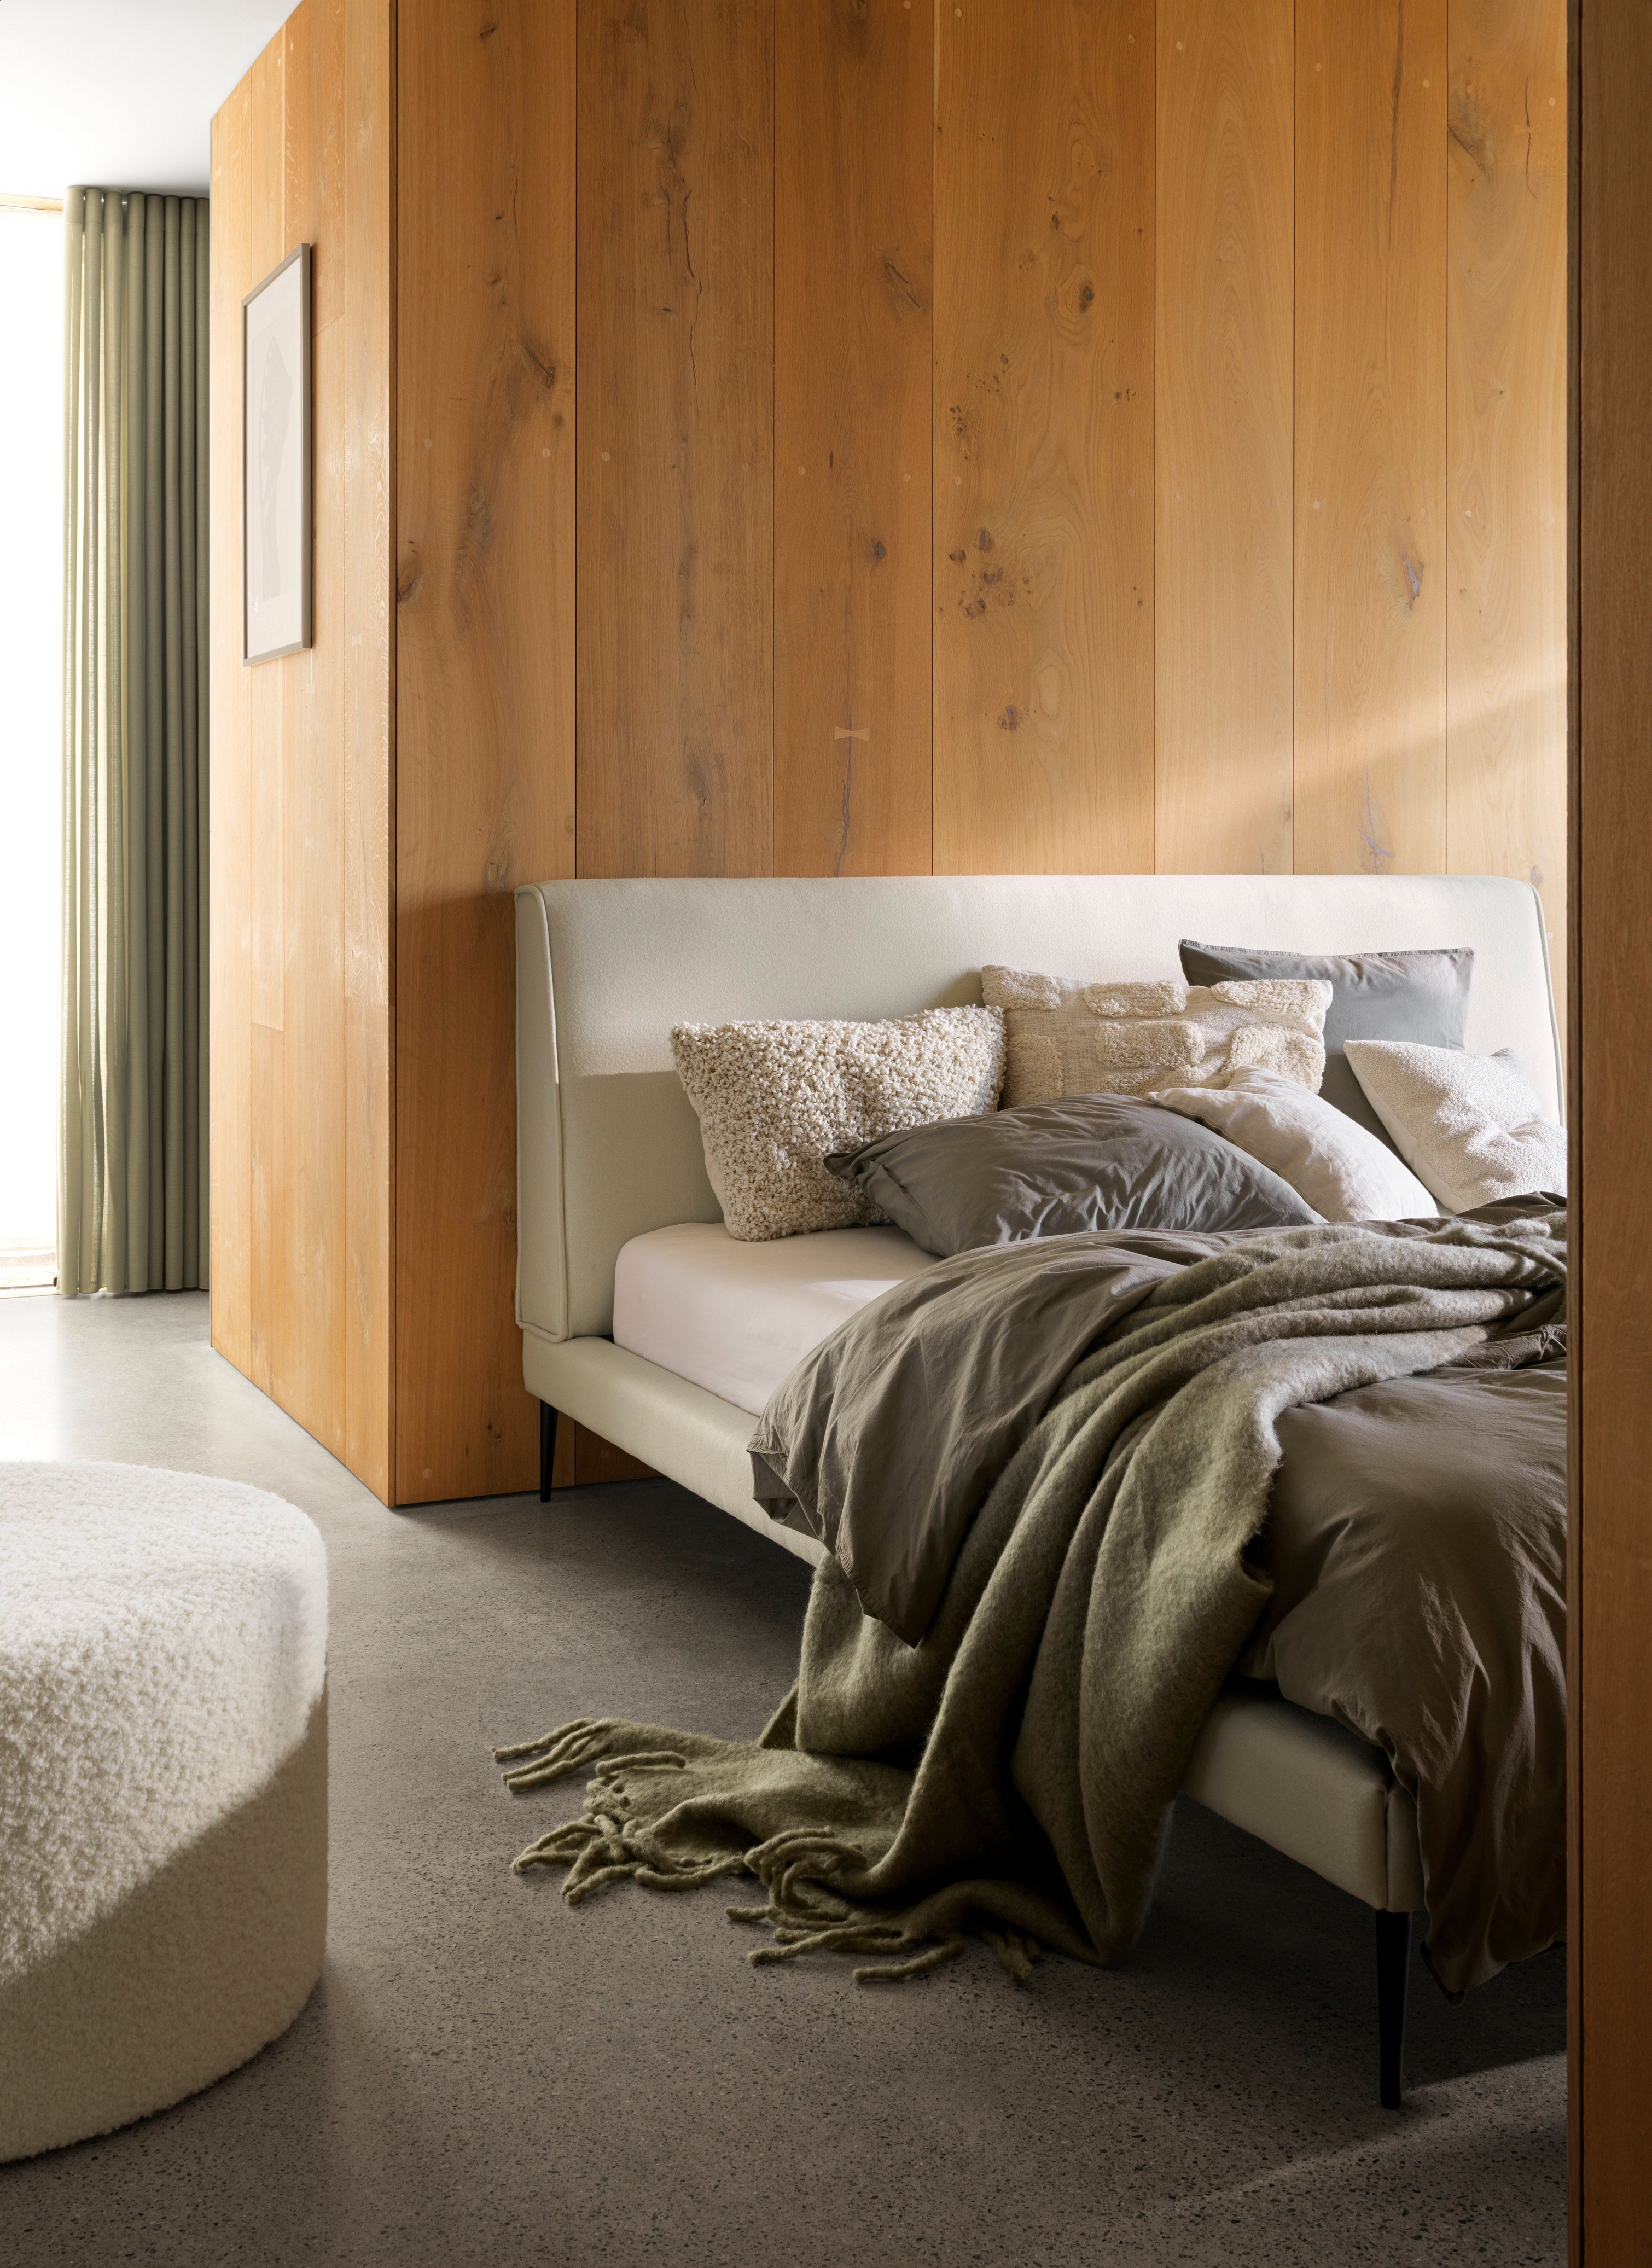 Lit douillet avec plaids et oreillers moelleux contre un mur en bois avec lumière douce.